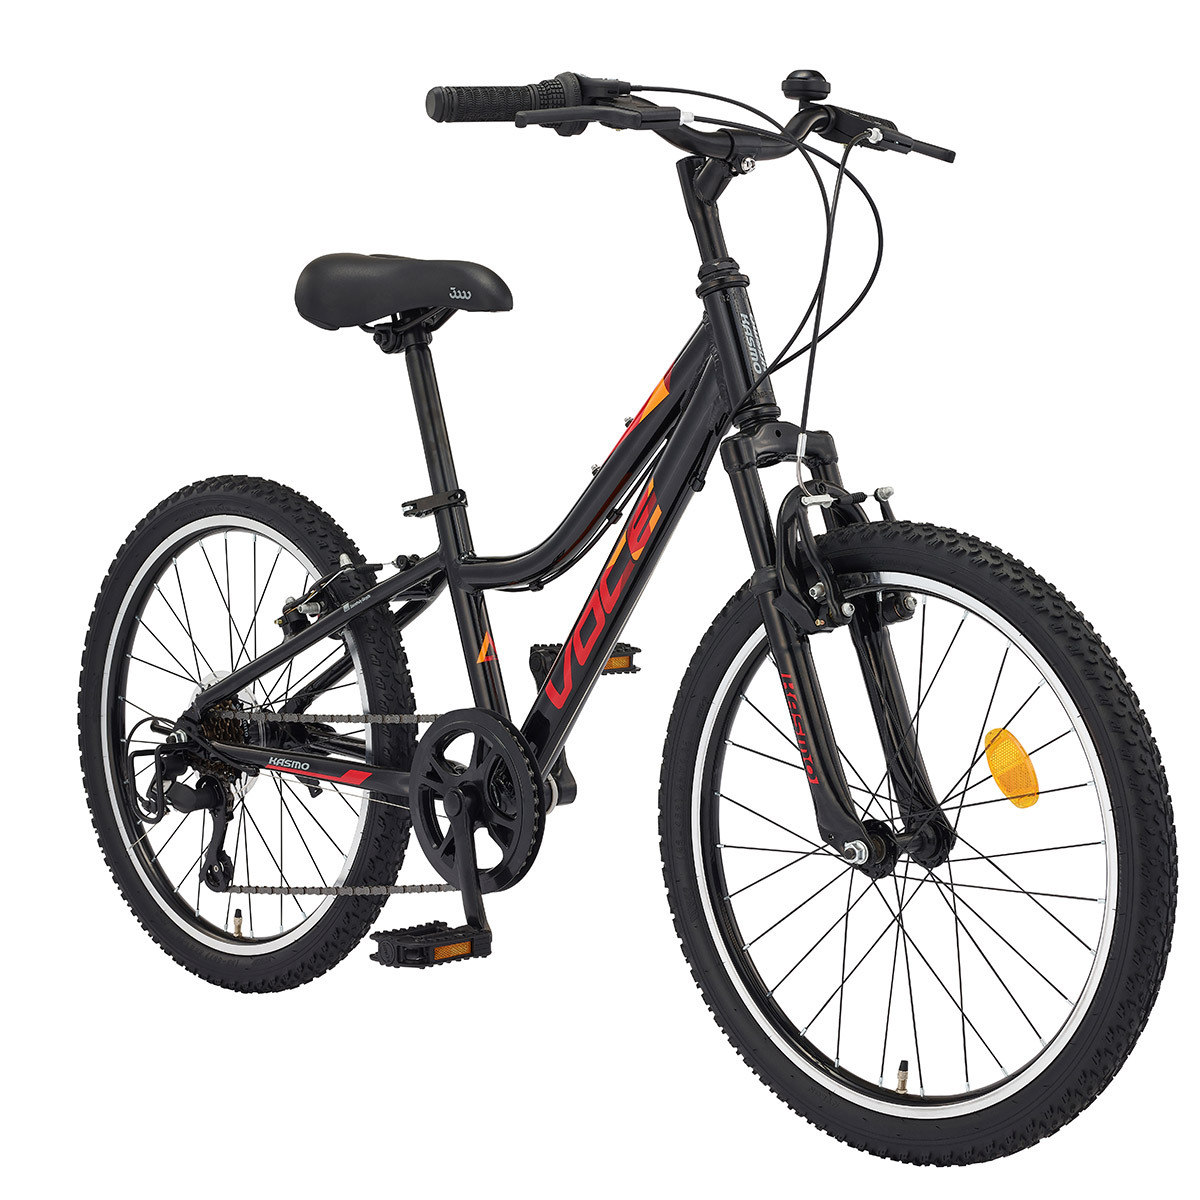 카스모 보체 MTB 자전거 56cm (22인치) - 블랙